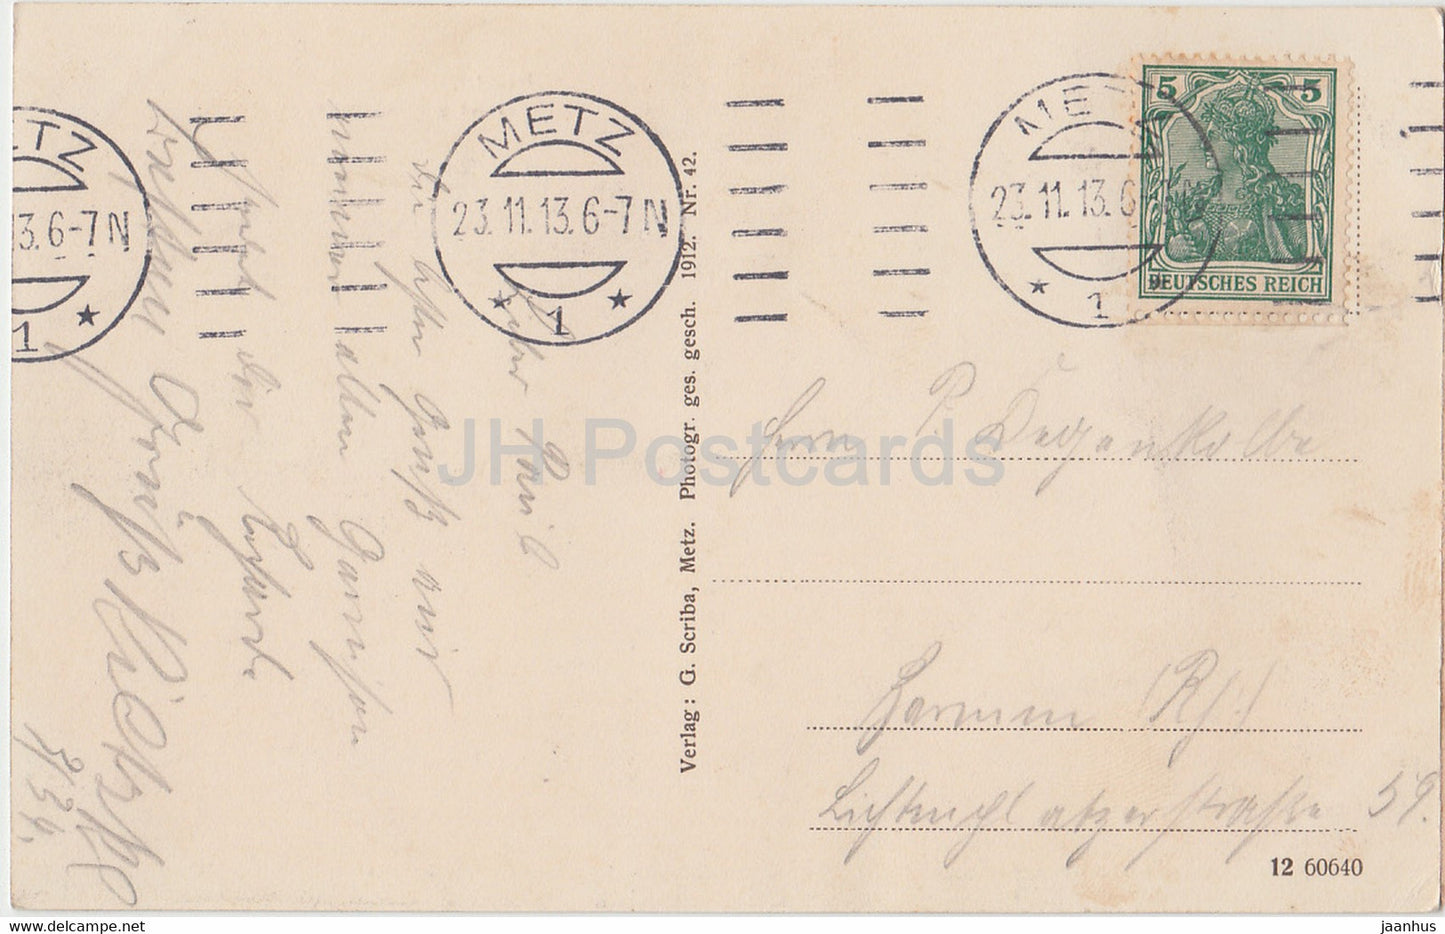 Metz - Neuer Hauptbahnhof - Nouvelle gare centrale - gare - carte postale ancienne - 1913 - France - utilisé